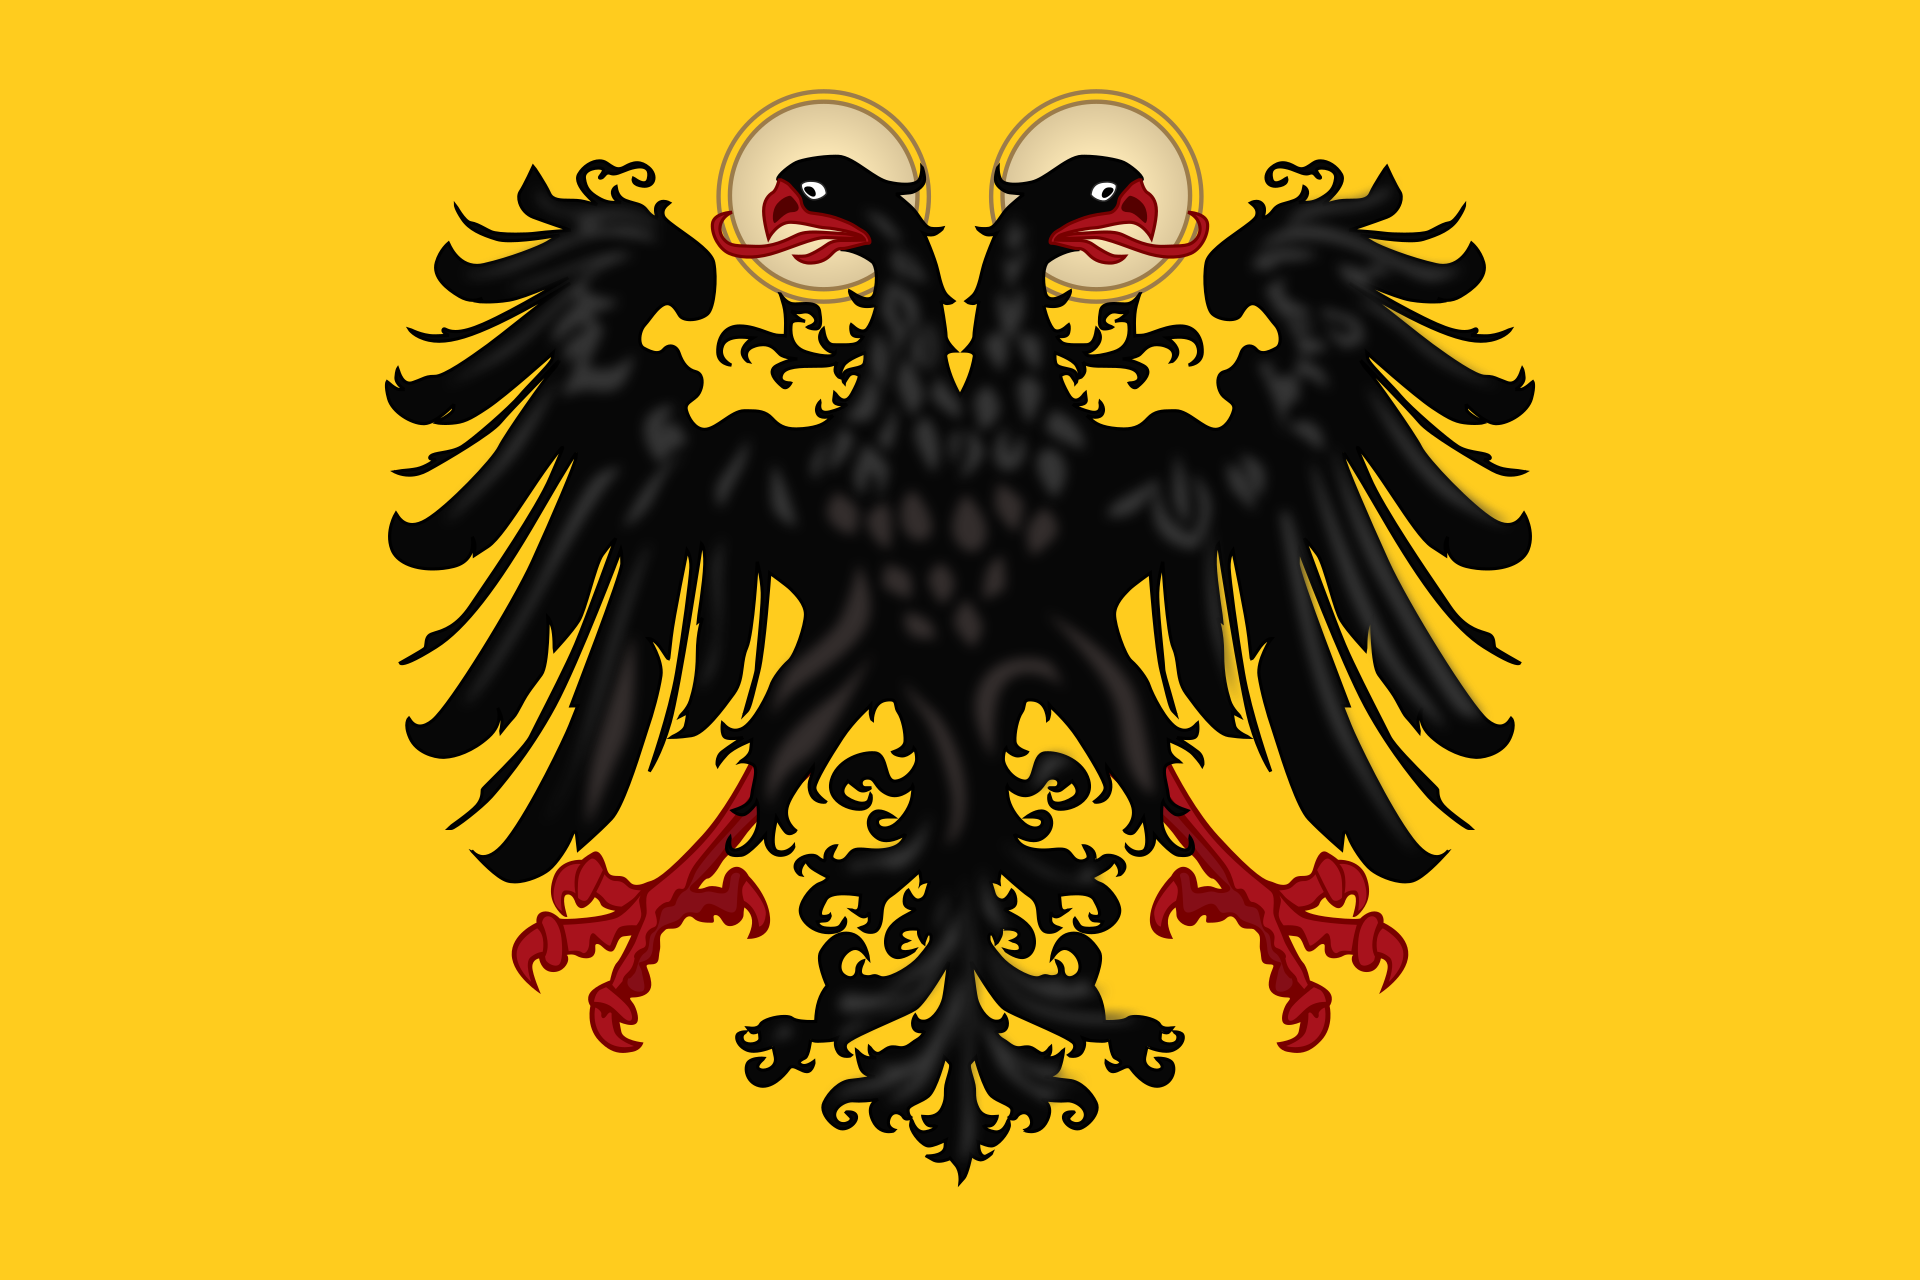 神聖羅馬帝國國旗 (1430－1806).png